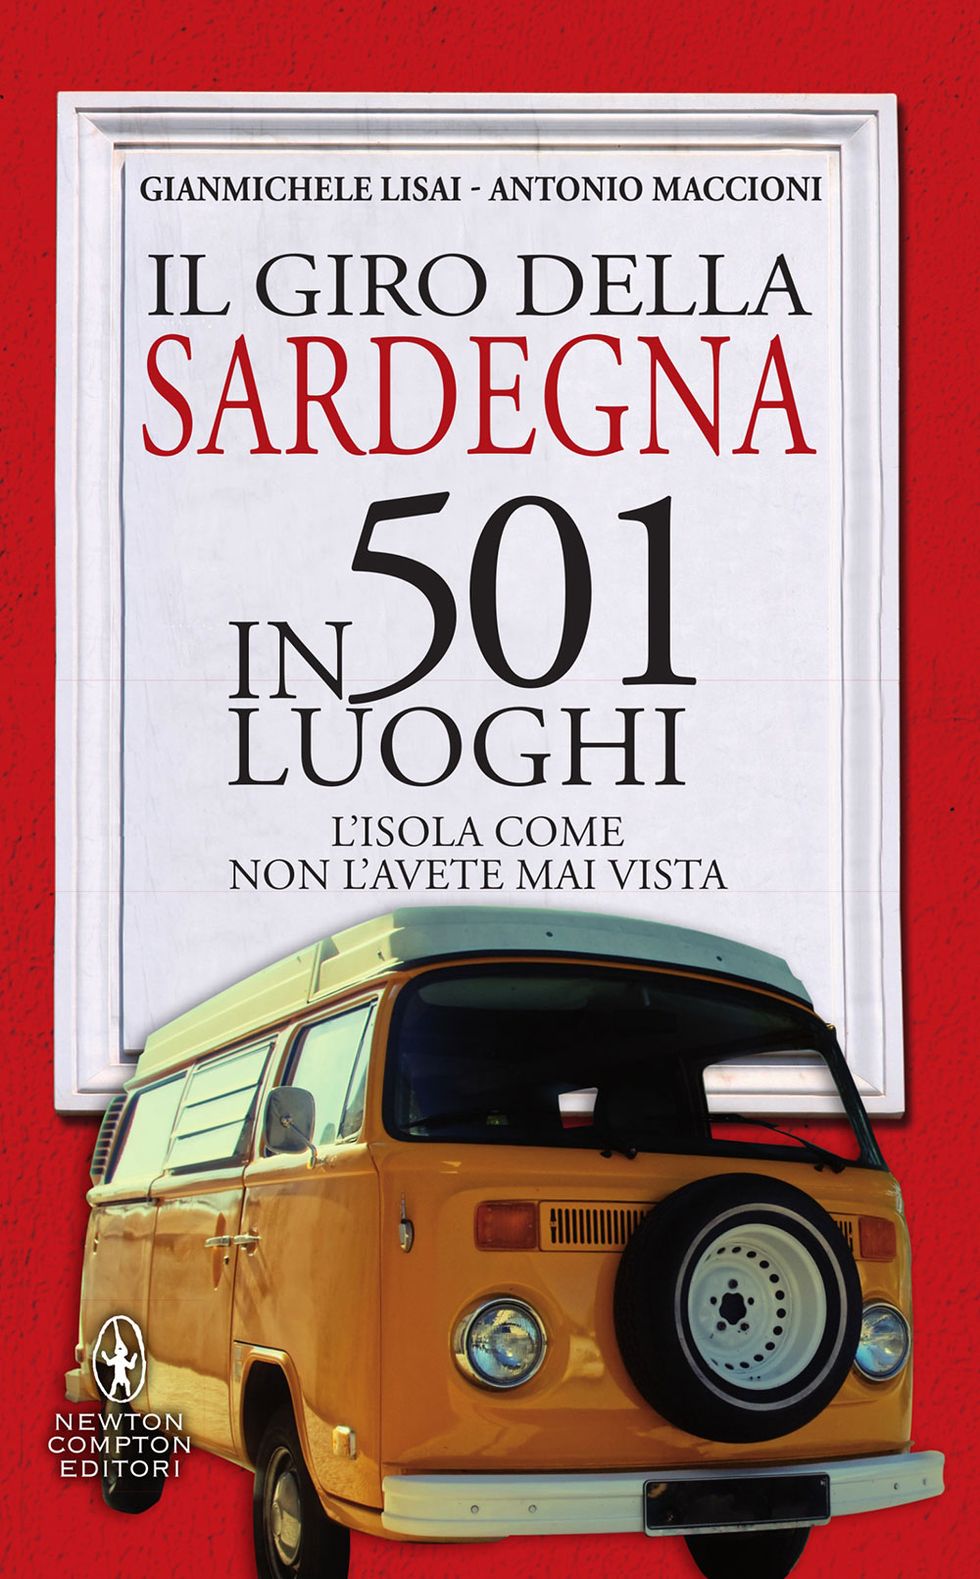 Gianmichele Lisai – Antonio Maccioni, Il giro della Sardegna in 501 luoghi